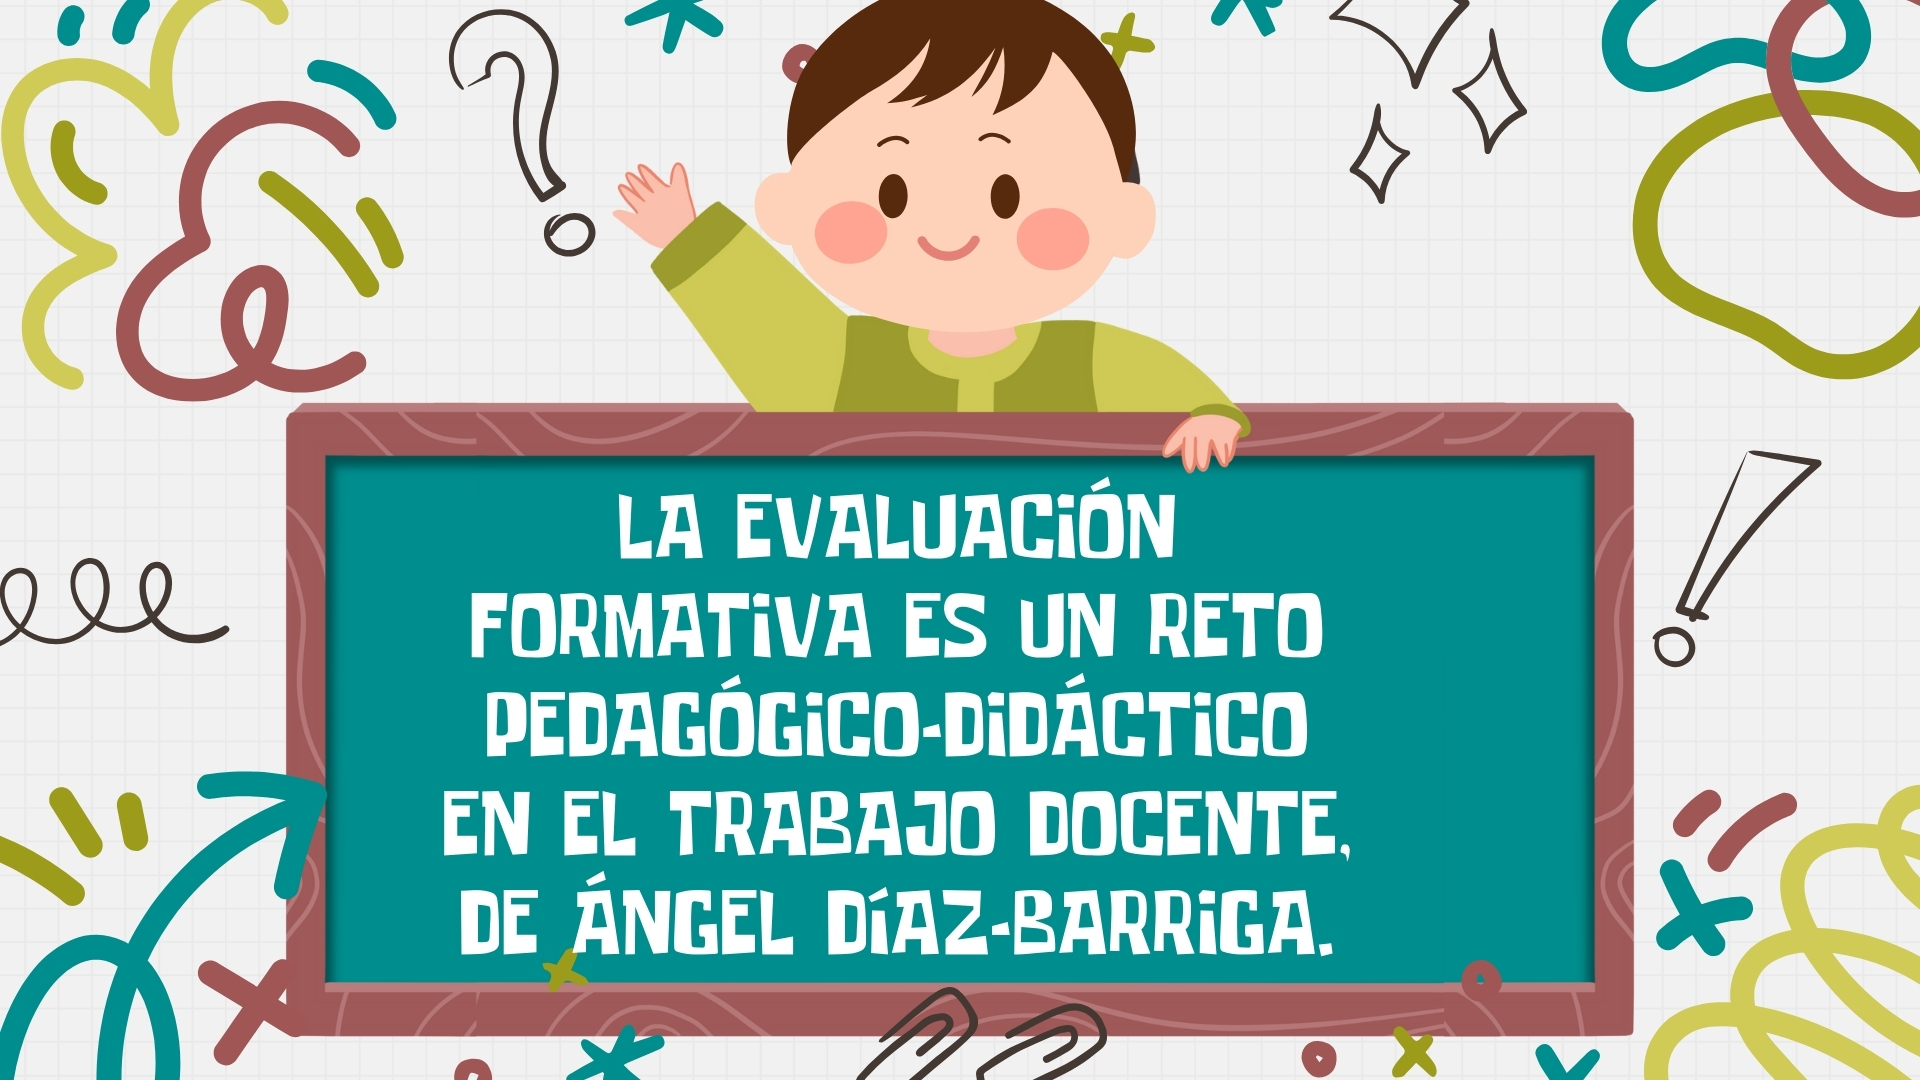 Resumen y puntos clave de la evaluación formativa es un reto pedagógico-didáctico en el trabajo docente, de Ángel Díaz-Barriga